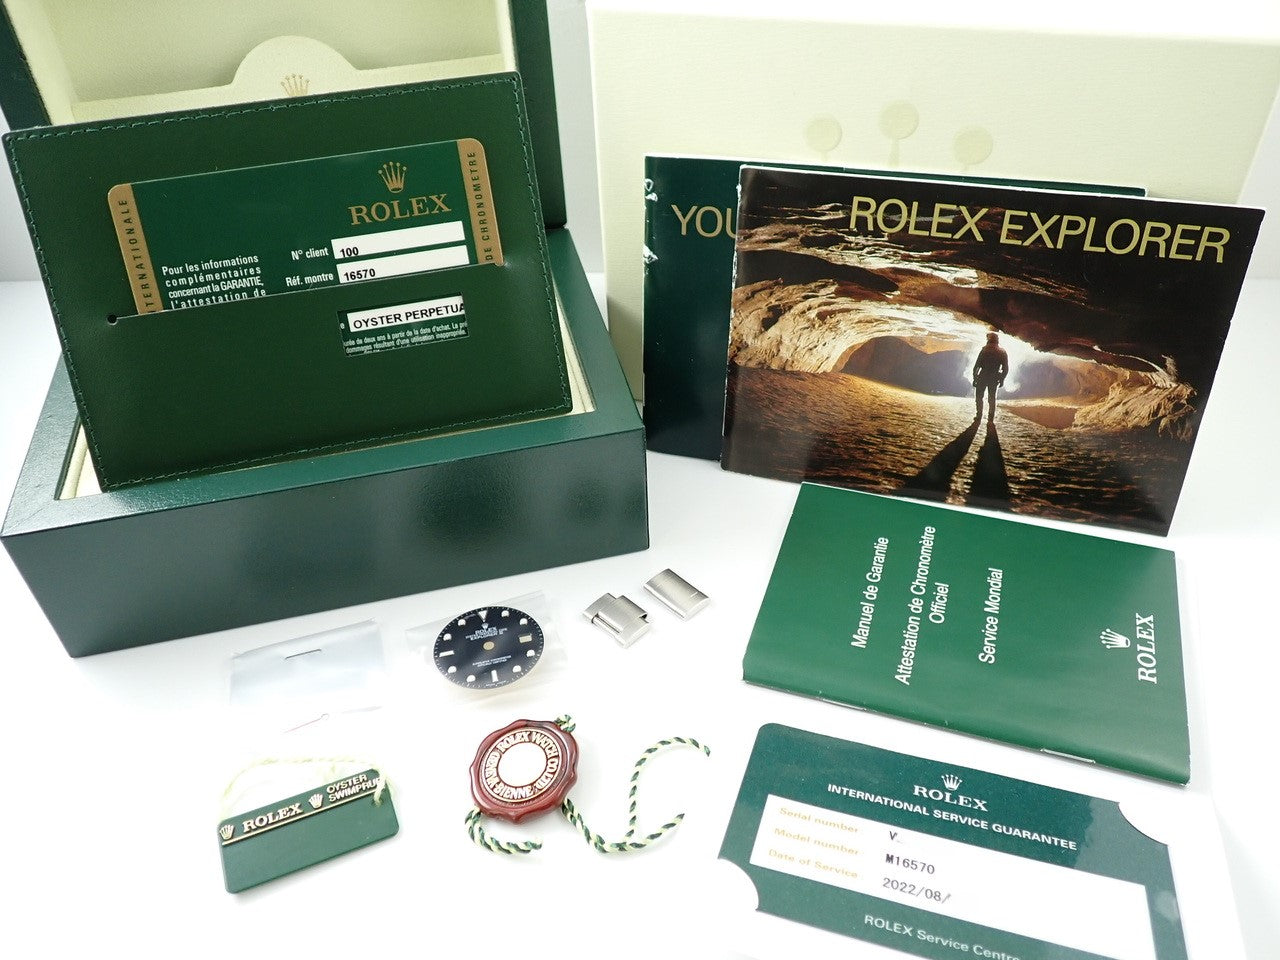 Rolex Explorer II &lt;Warranty, Box, etc.&gt;